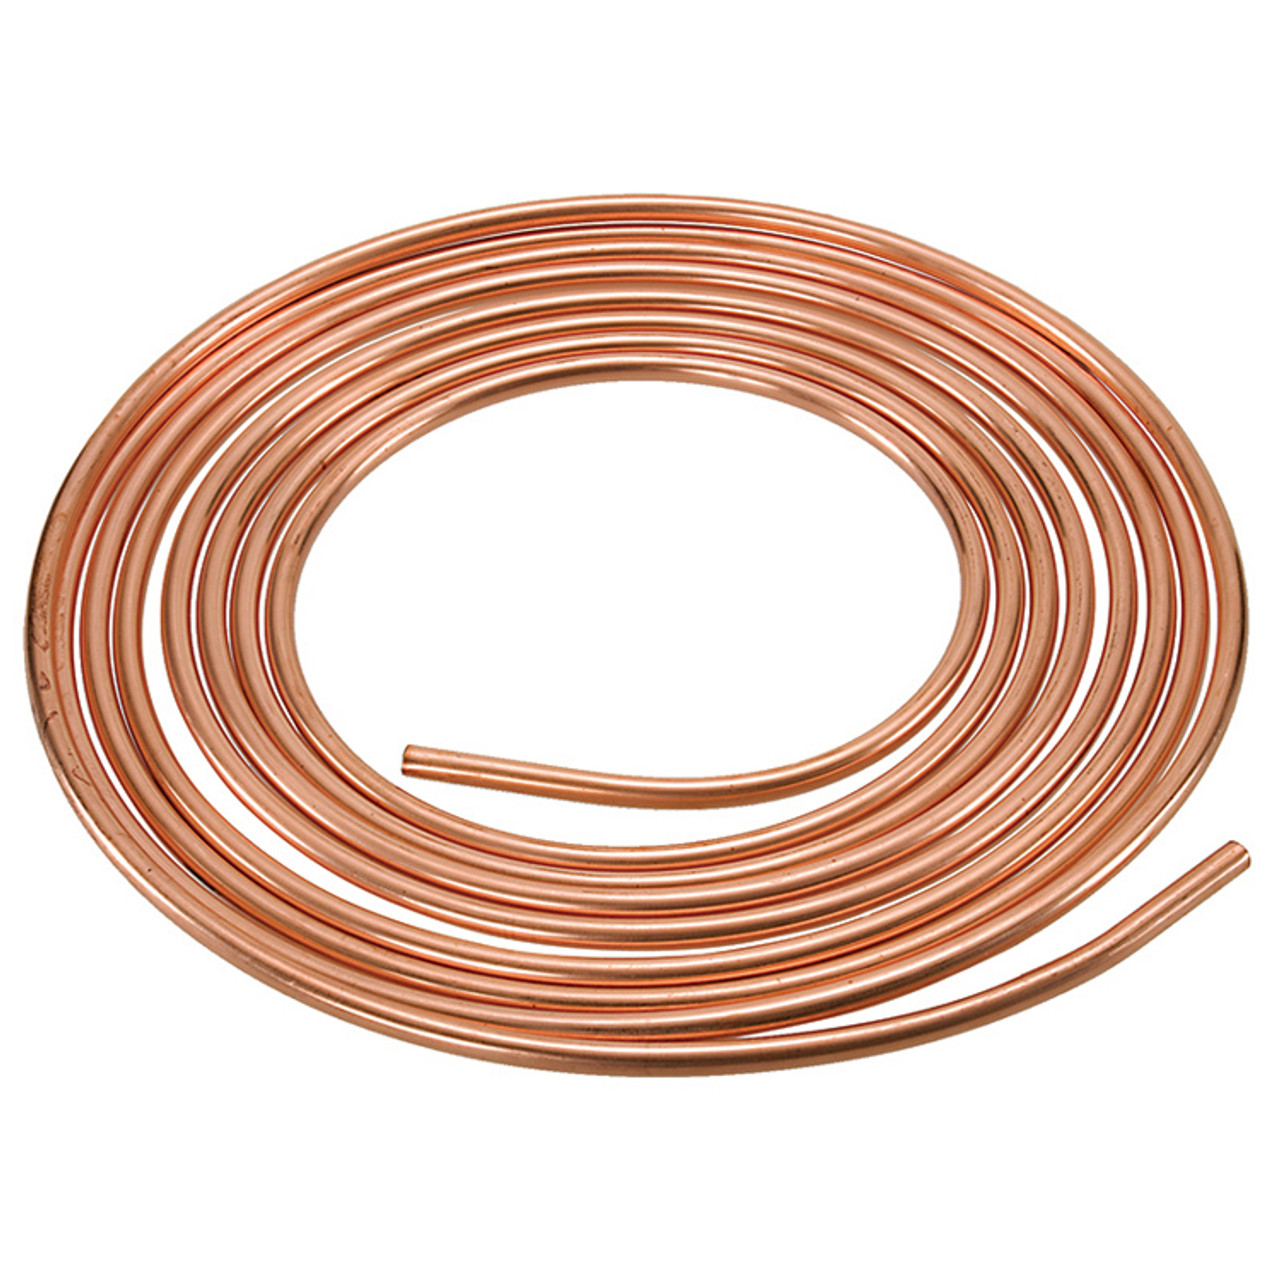 5/16" ASTM B280 Copper Tubing   G400ACR-05